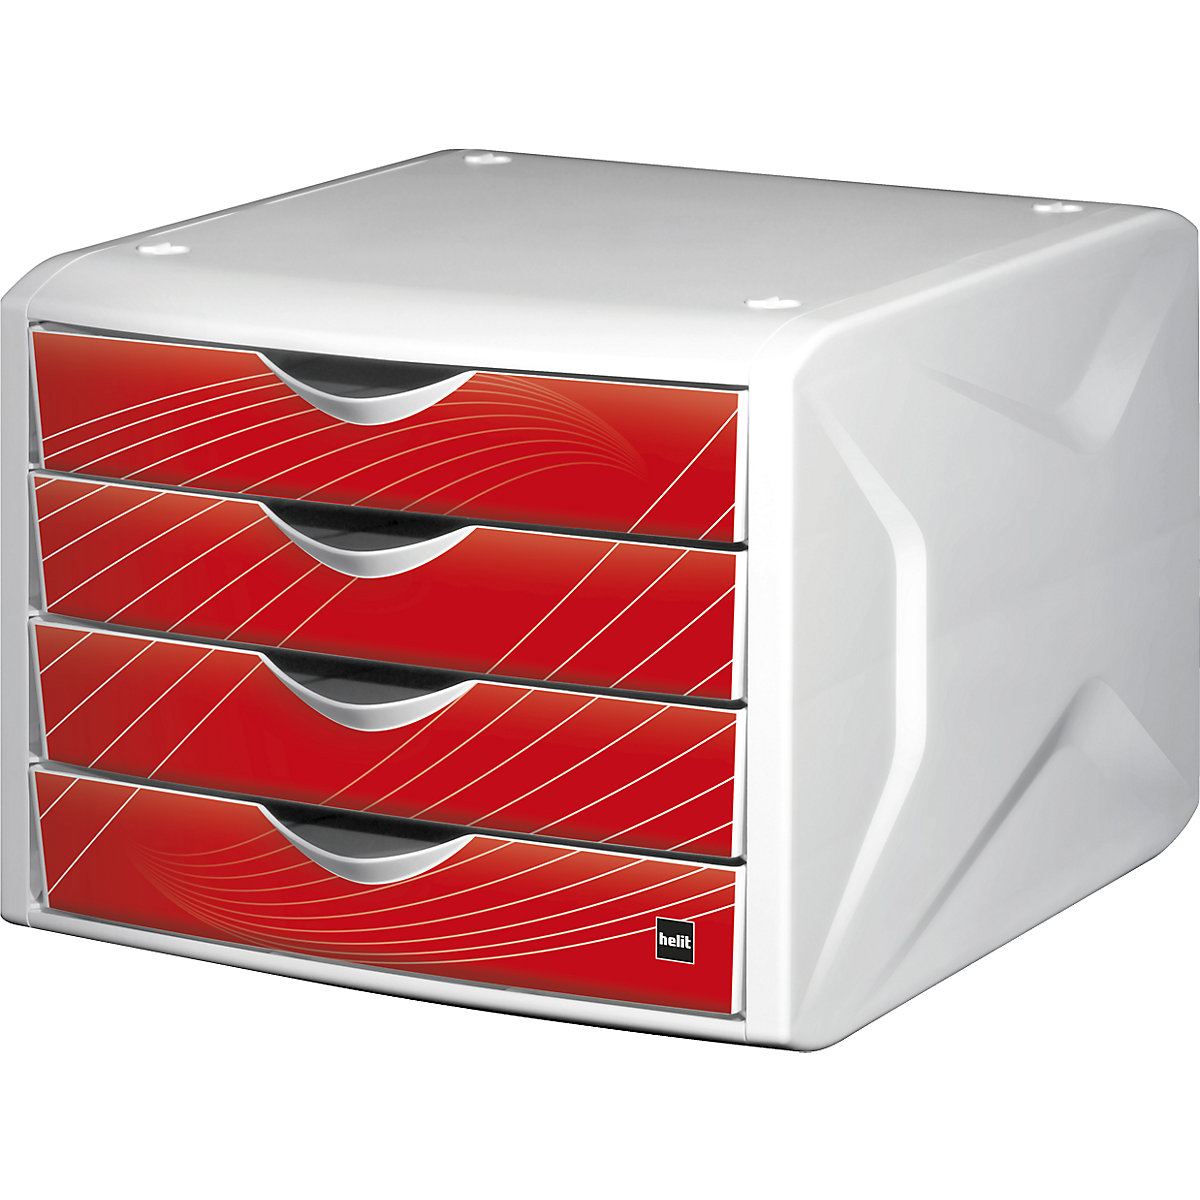 Fiókos doboz – helit, ma x szé x mé 212 x 262 x 330 mm, cs. e. 5 db, fiókok formatervezés red rook-9